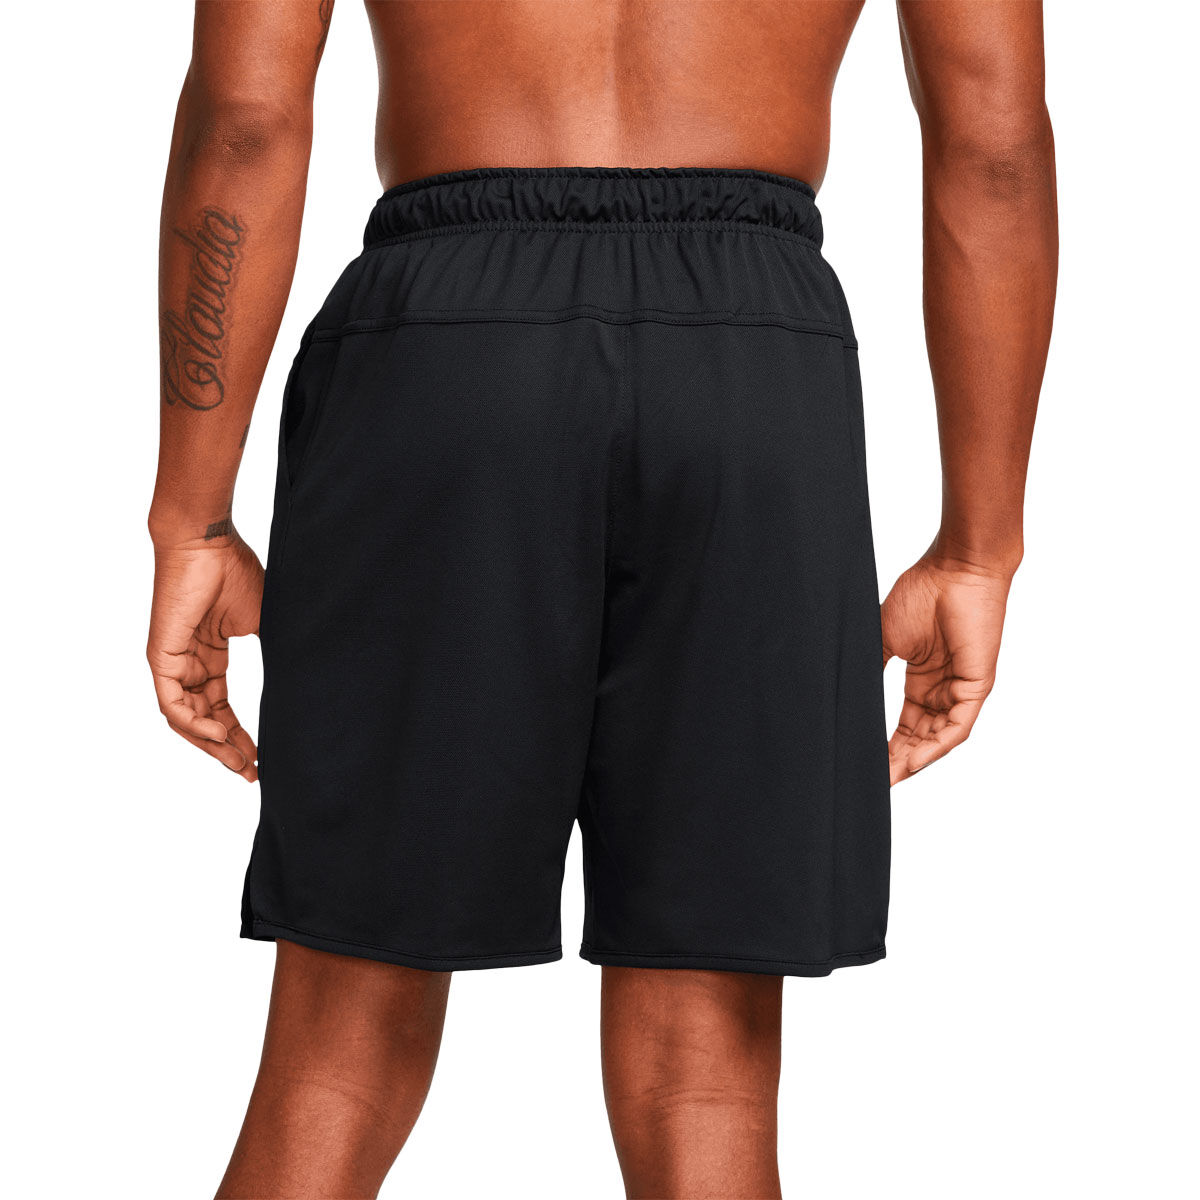 Men's Training Clothing | Running & Workout Apparel | rebel